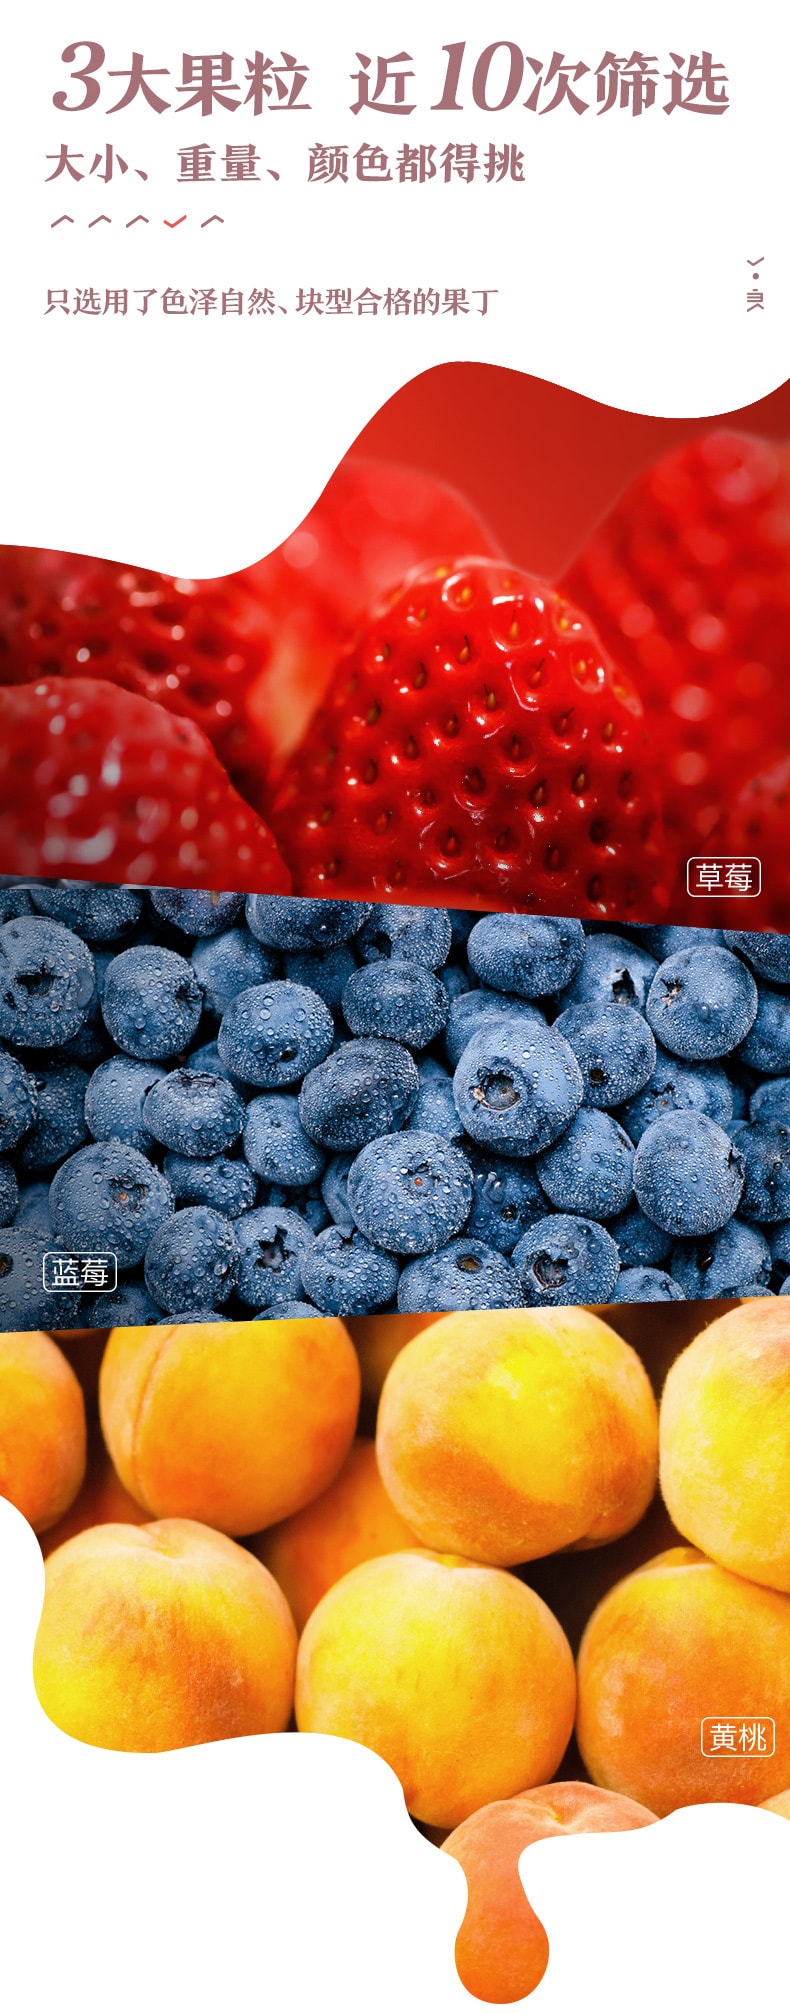 [中國直郵]良品鋪子 BESTORE 優格果粒 三合一組合 草莓/藍莓/黃桃 混合54g*2盒